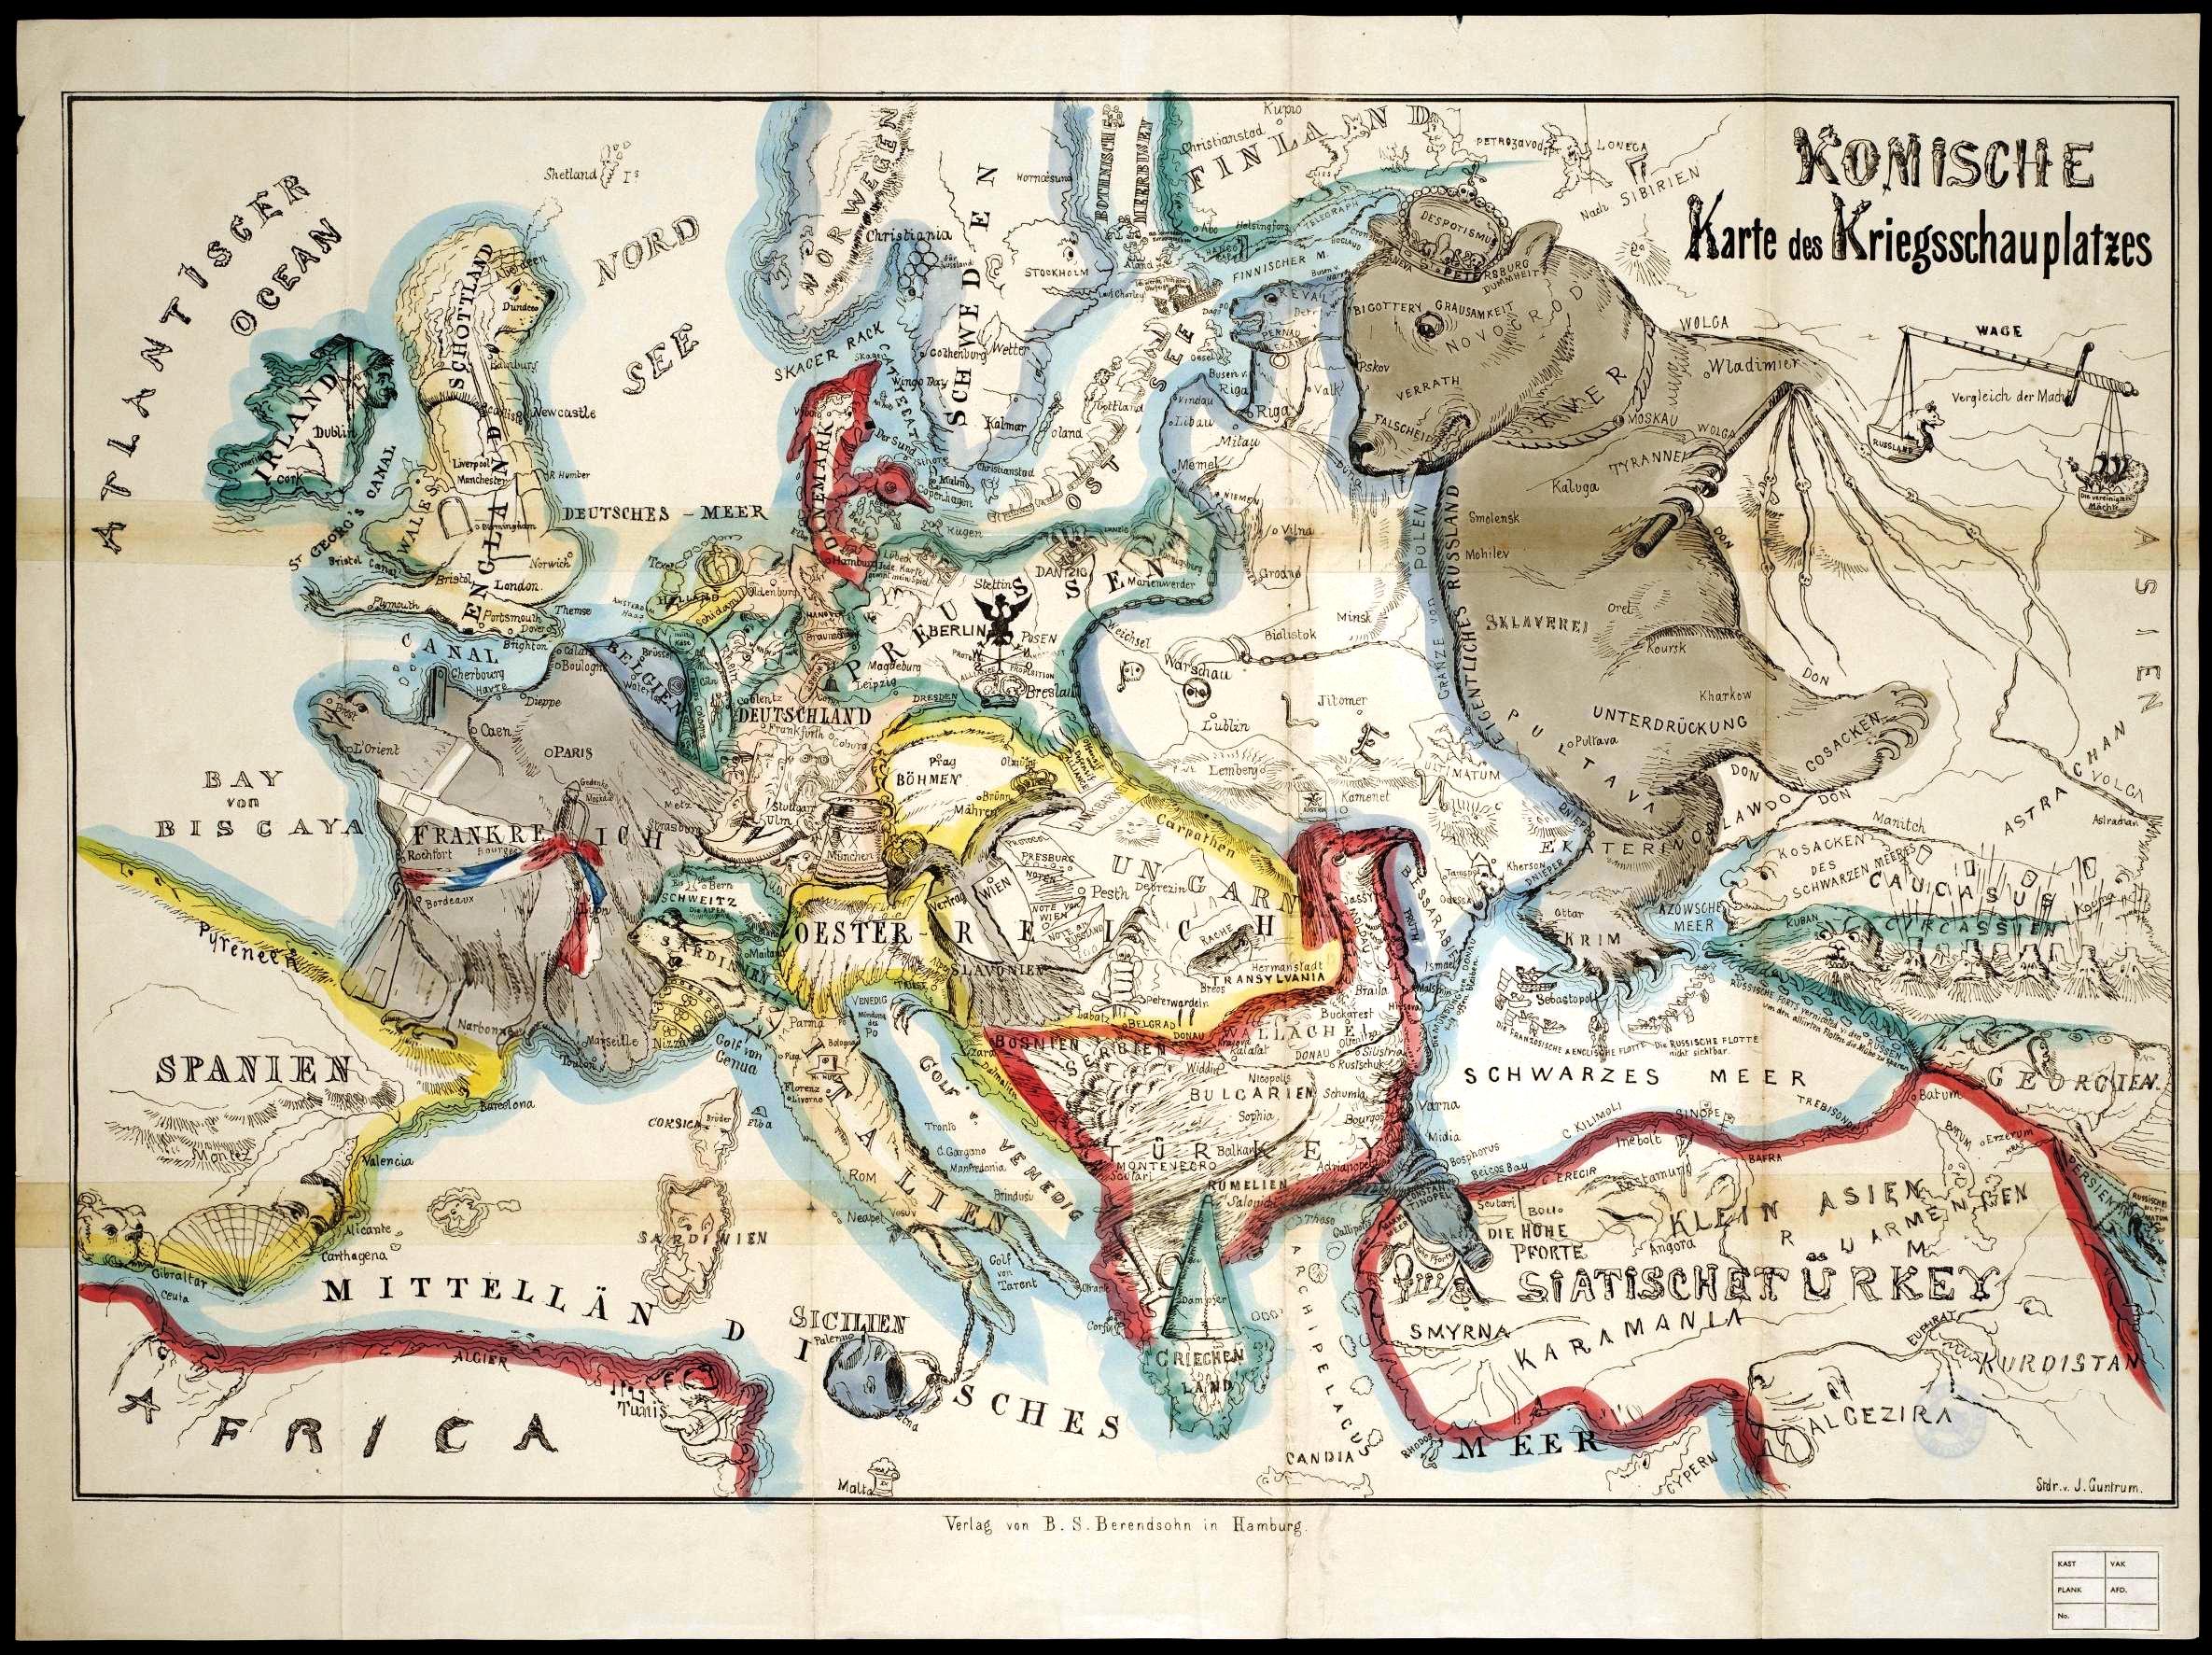 風刺 皮肉の効きまくった世紀初頭ごろのヨーロッパ地図いろいろ Dna